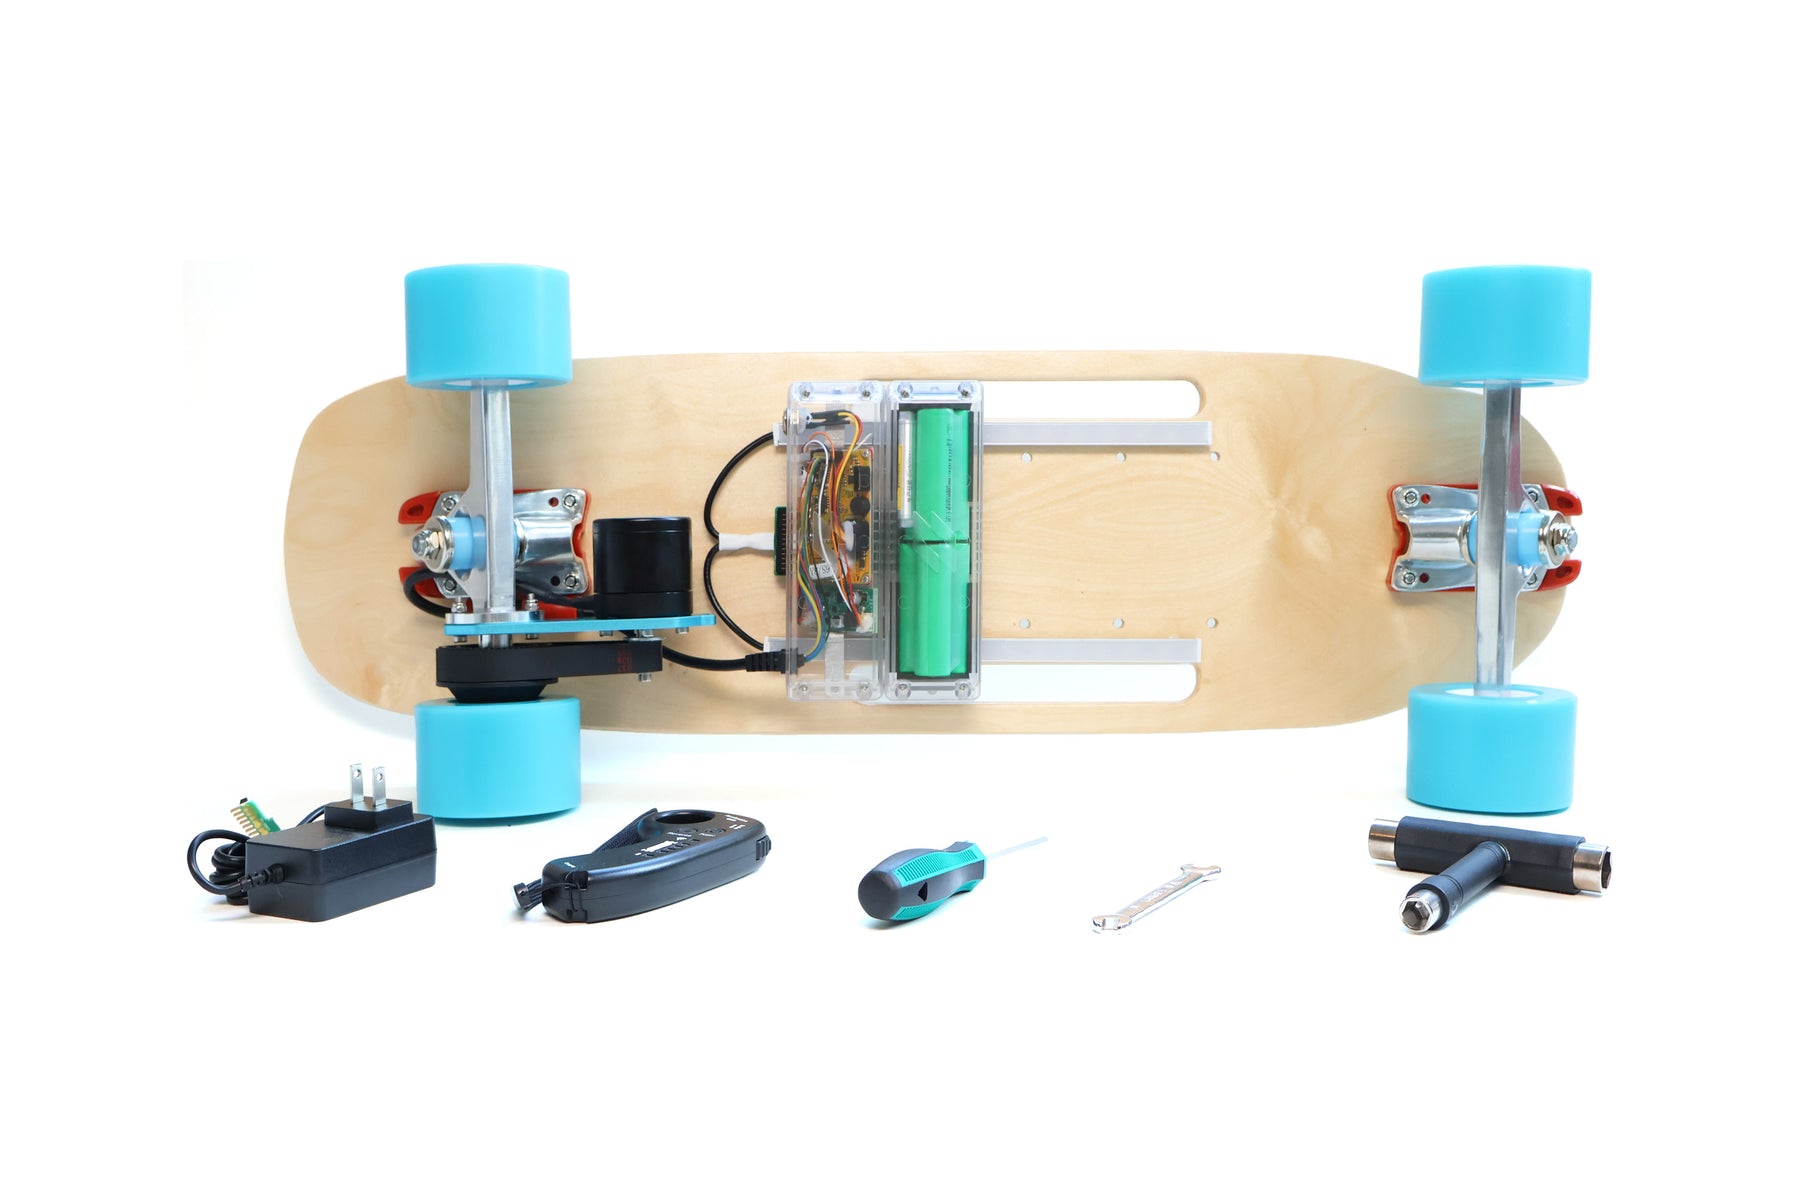 STEM Electric Skateboard Kit